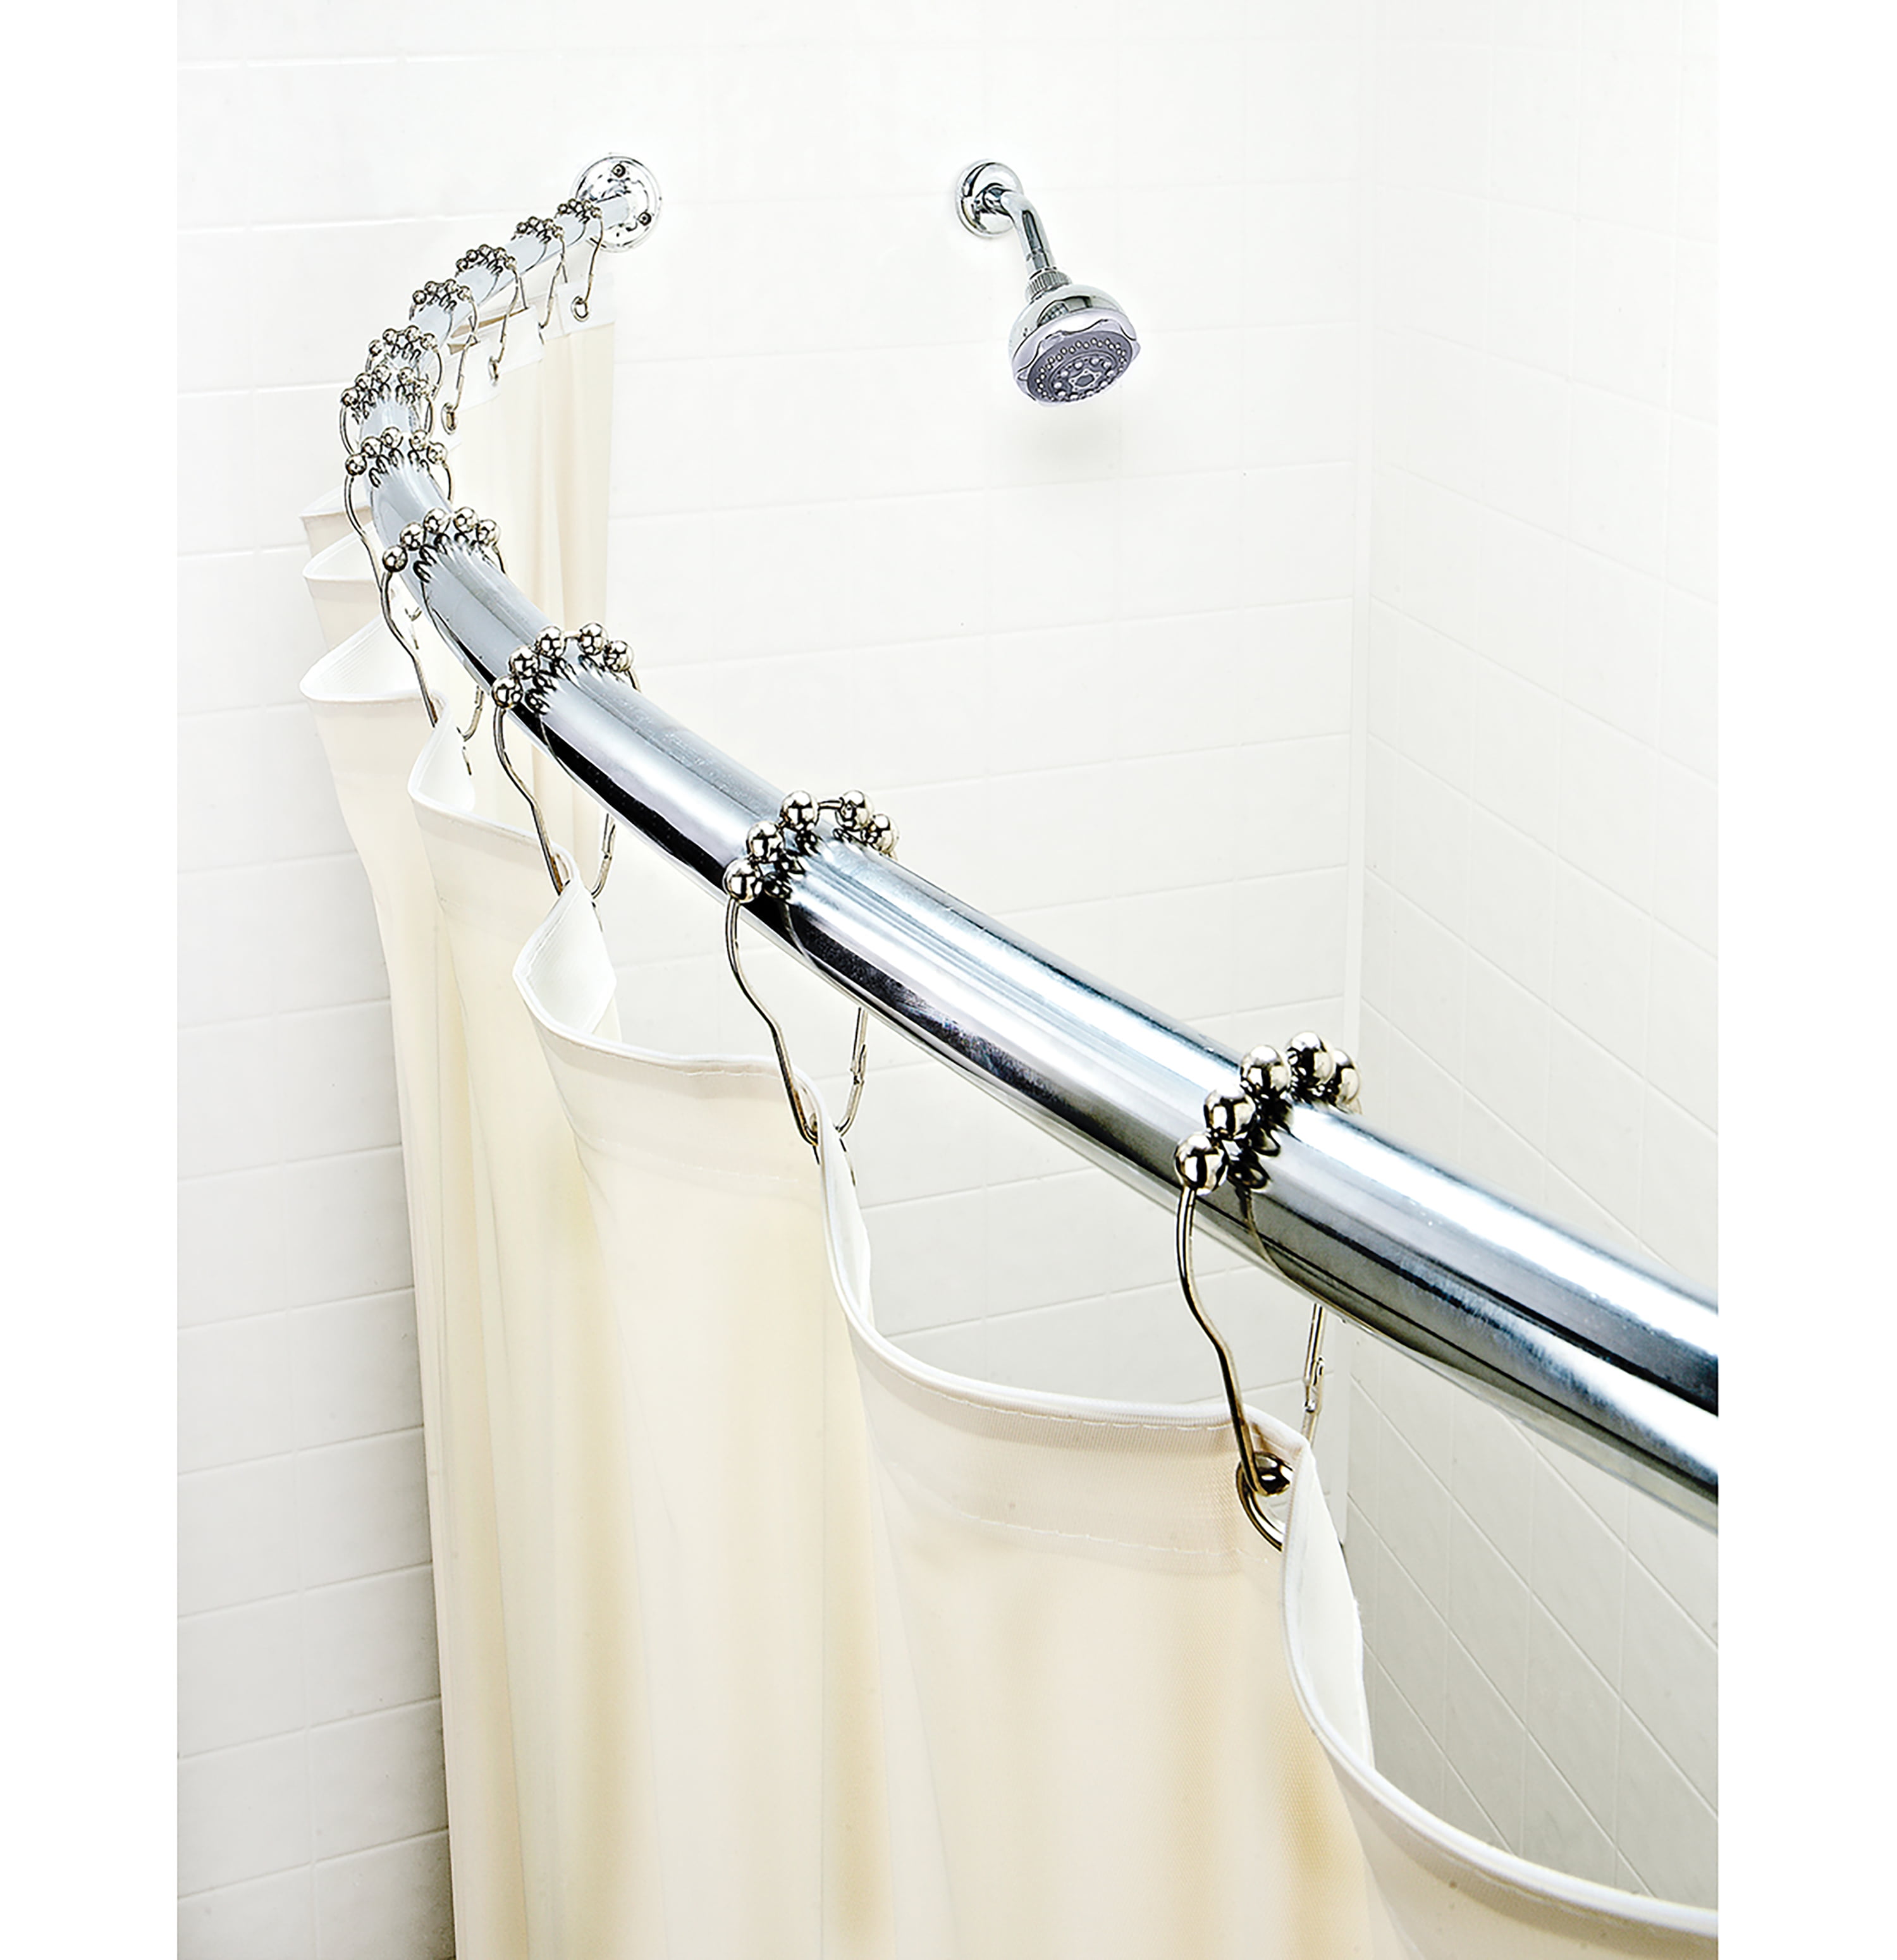 Average Shower Curtain Rod Length Curtain Menzilperde.Net